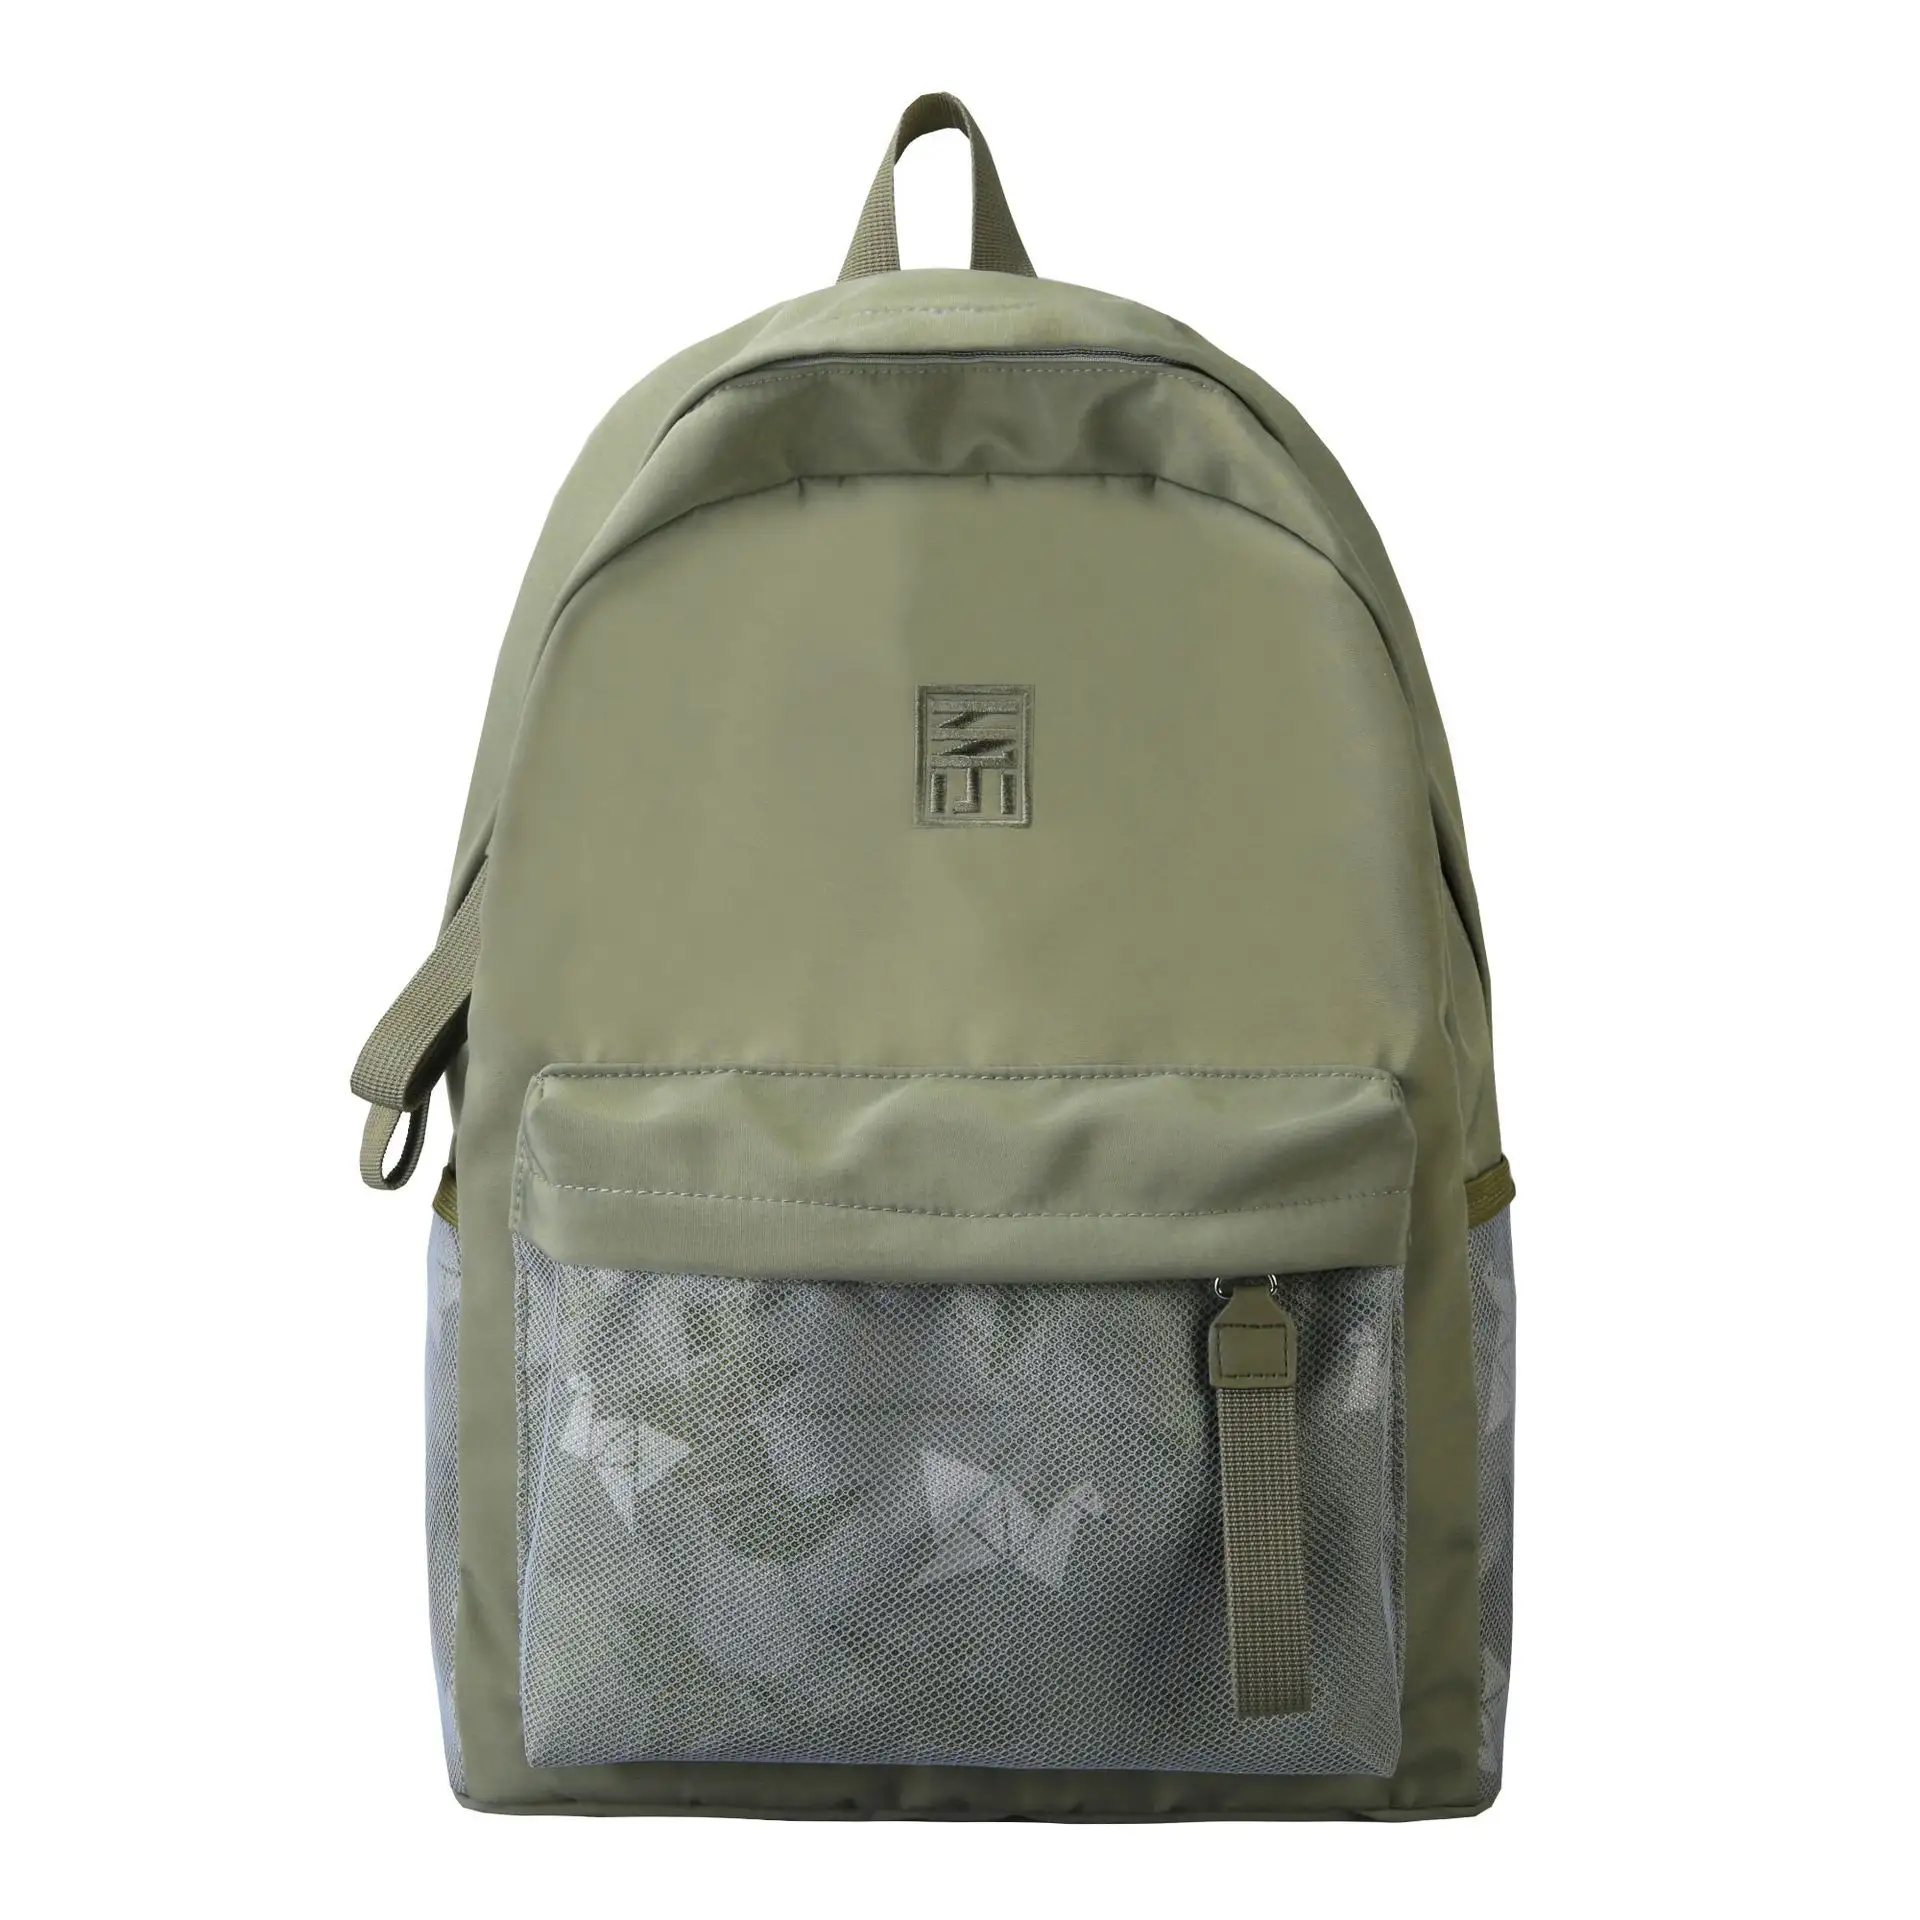 Nueva mochila de gran capacidad y alta calidad para parejas, mochila para estudiantes de secundaria universitarios, mochila para viajes en el campus